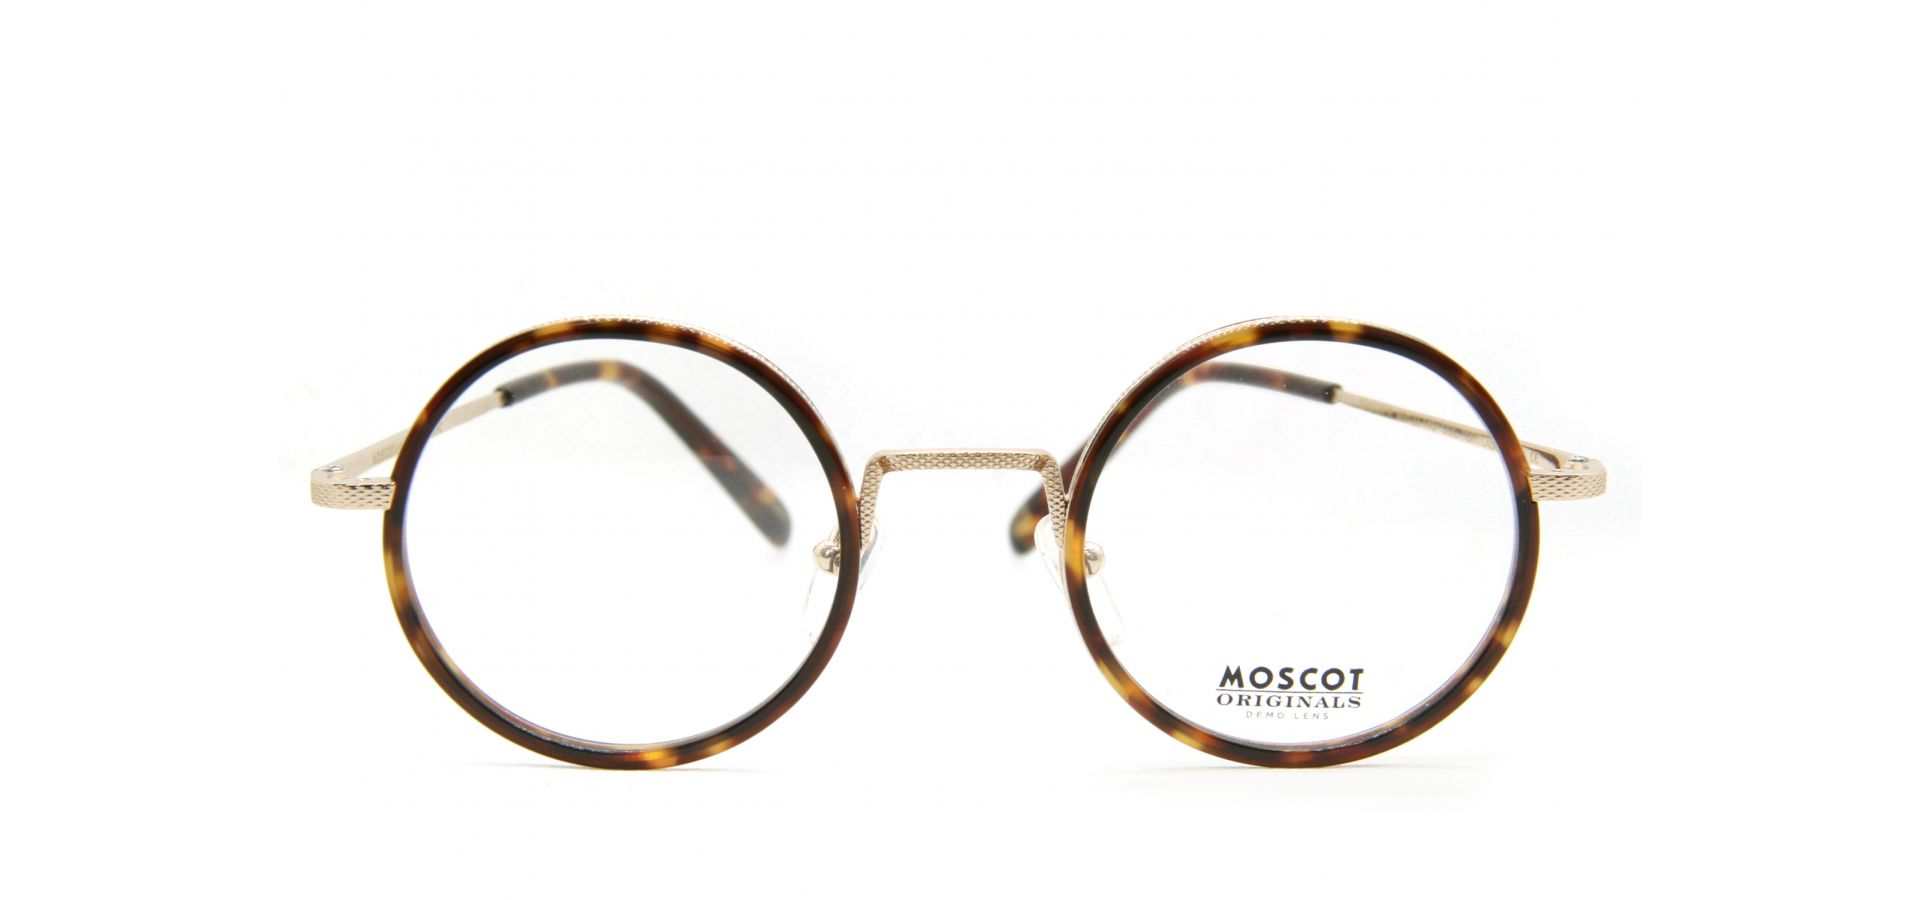 Korekcijska očala Moscot SHIKKER 2006-01 4523: Spol: unisex, Material: acetat/kovinska, Na voljo: v naši poslovalnici